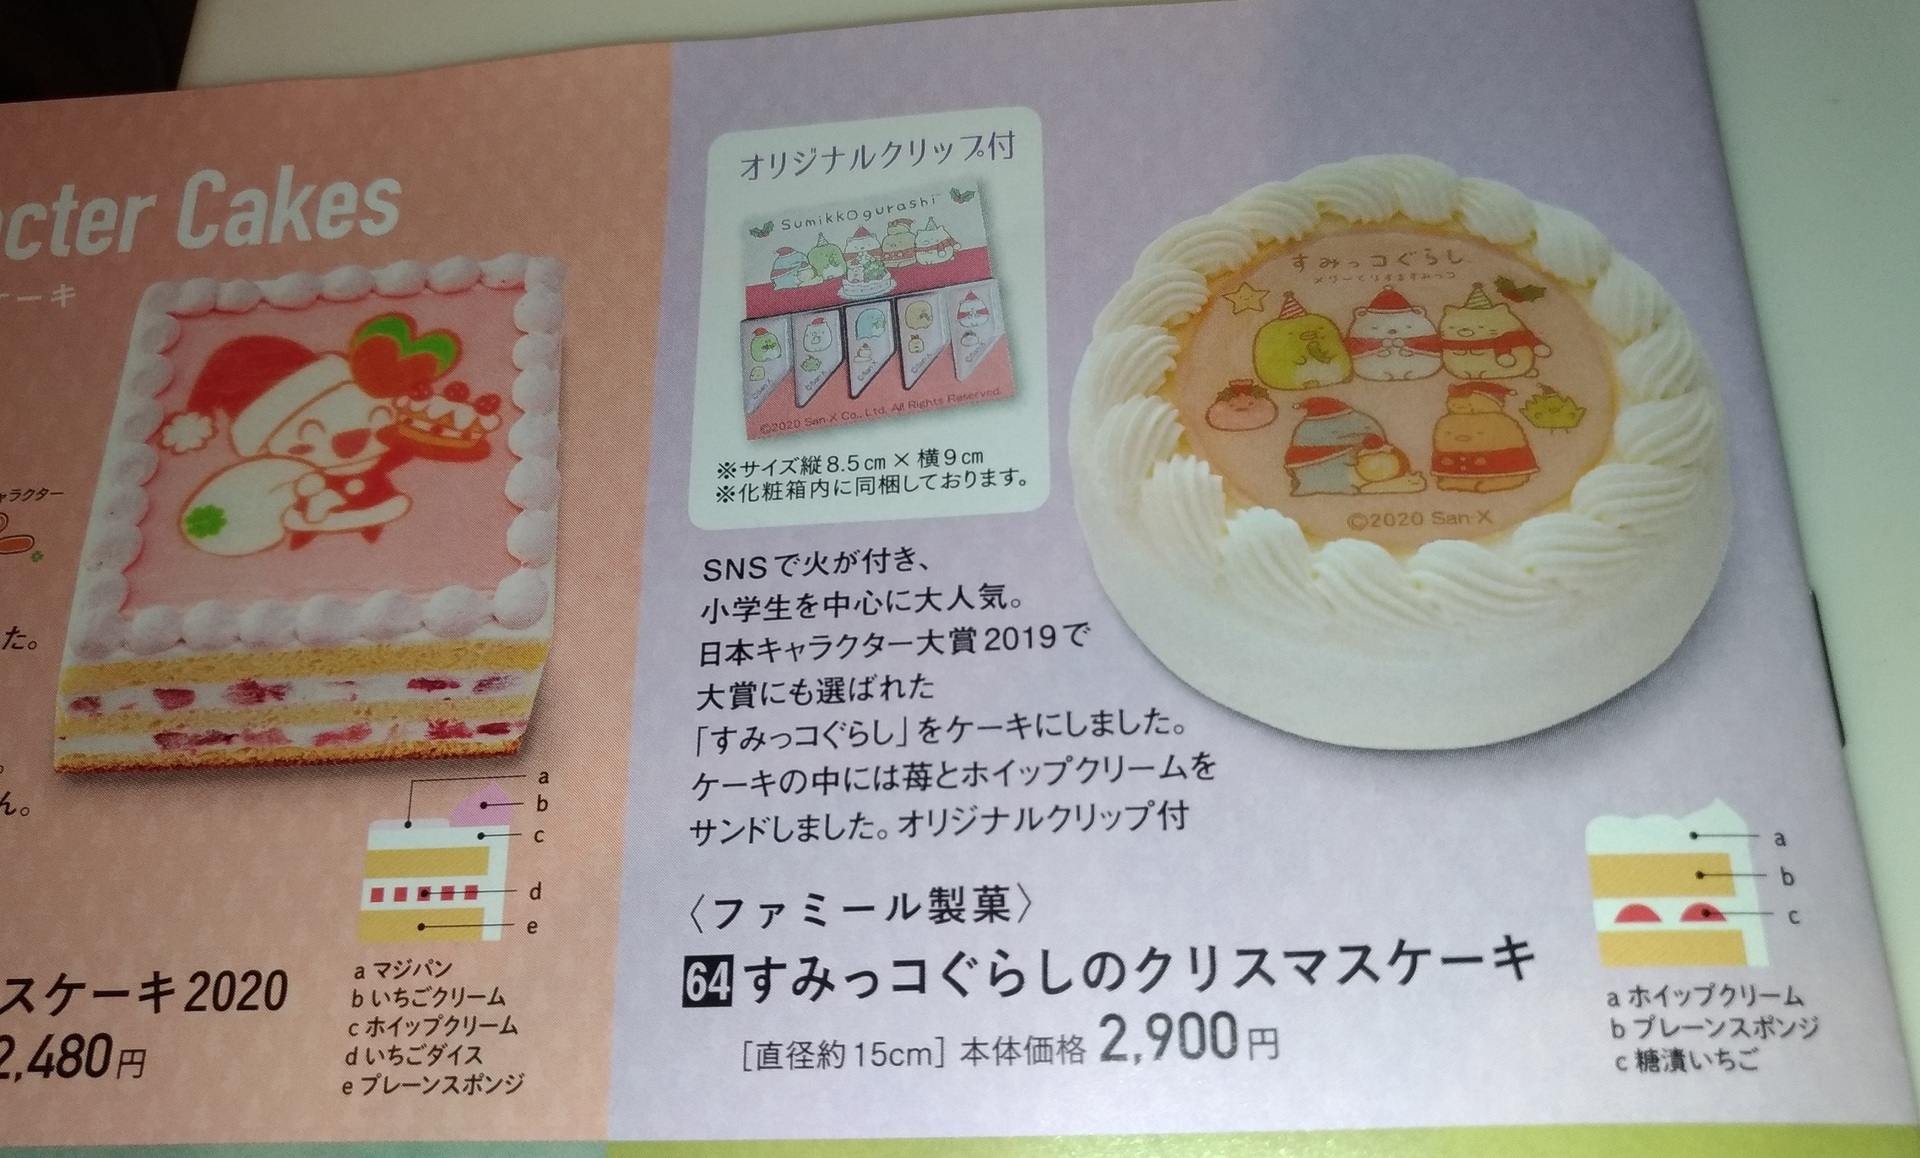 クリスマスケーキ 予約 ライフ 動画でケーキの紹介 スーパーライフ 大阪おすすめお惣菜野菜をブログでポイントも